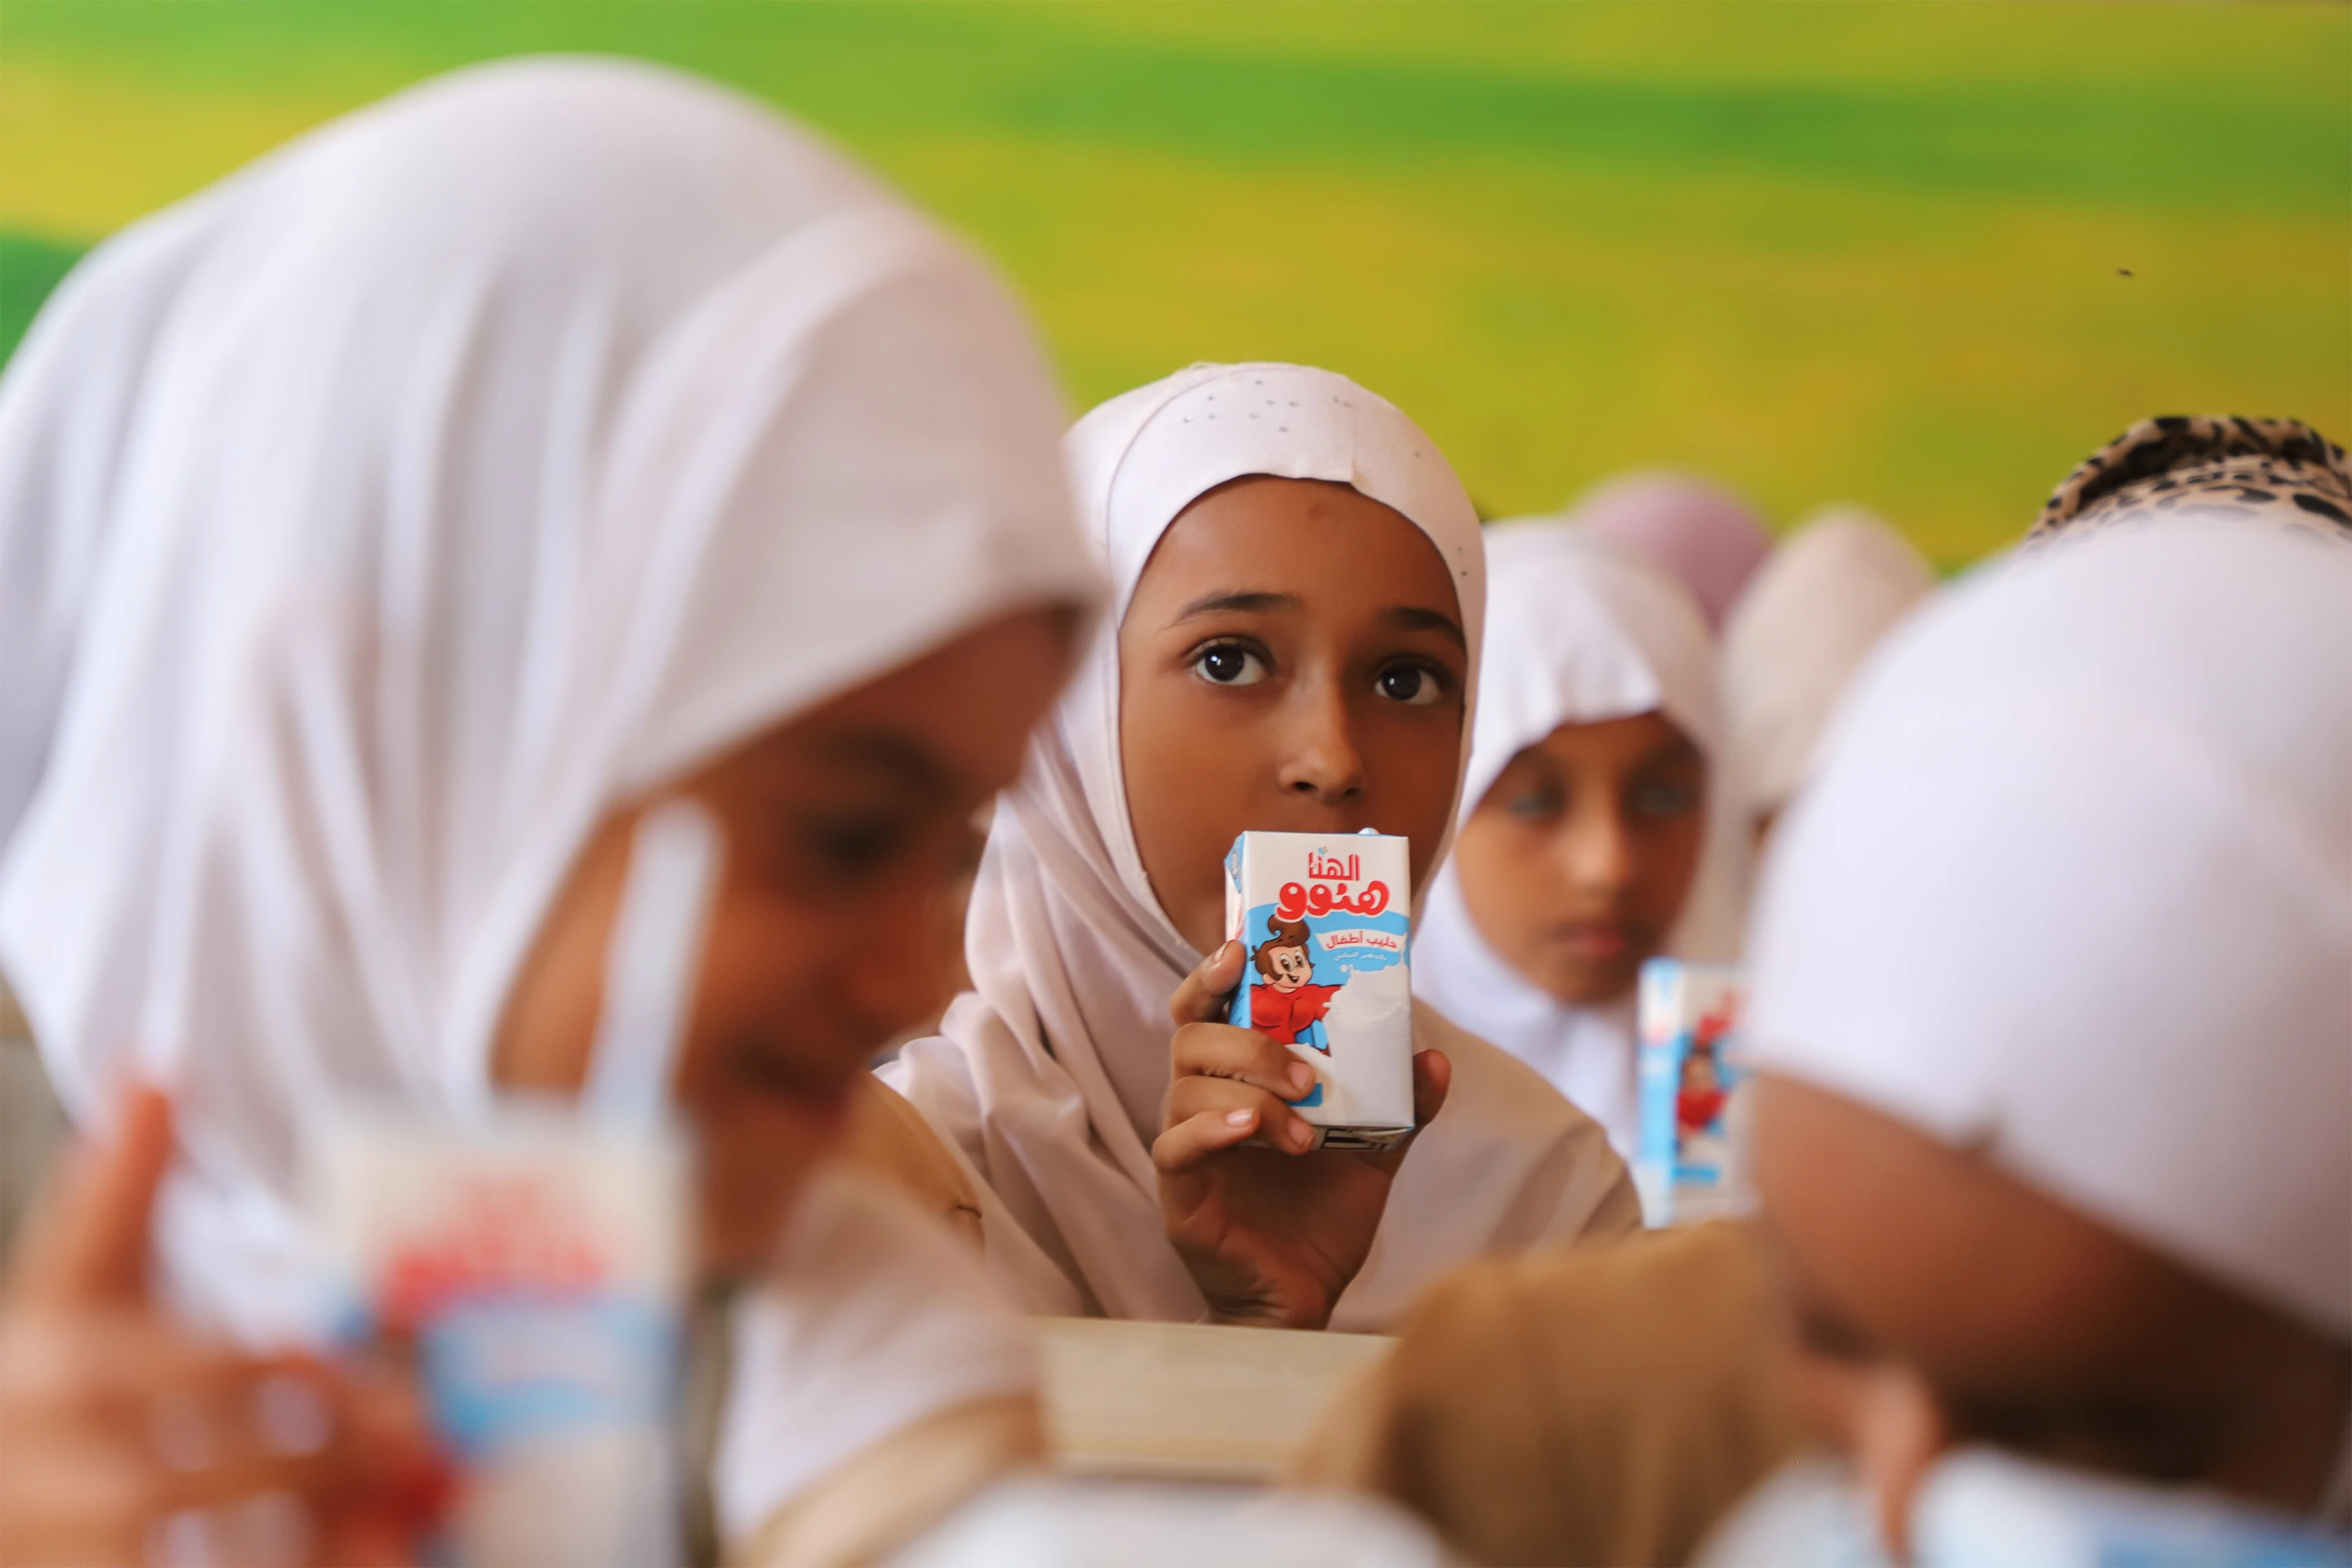 مجموعة هائل سعيد أنعم وشركاه وتتراباك تطلقان برنامجًا لدعم التغذية الآمنة في المدارس اليمنية